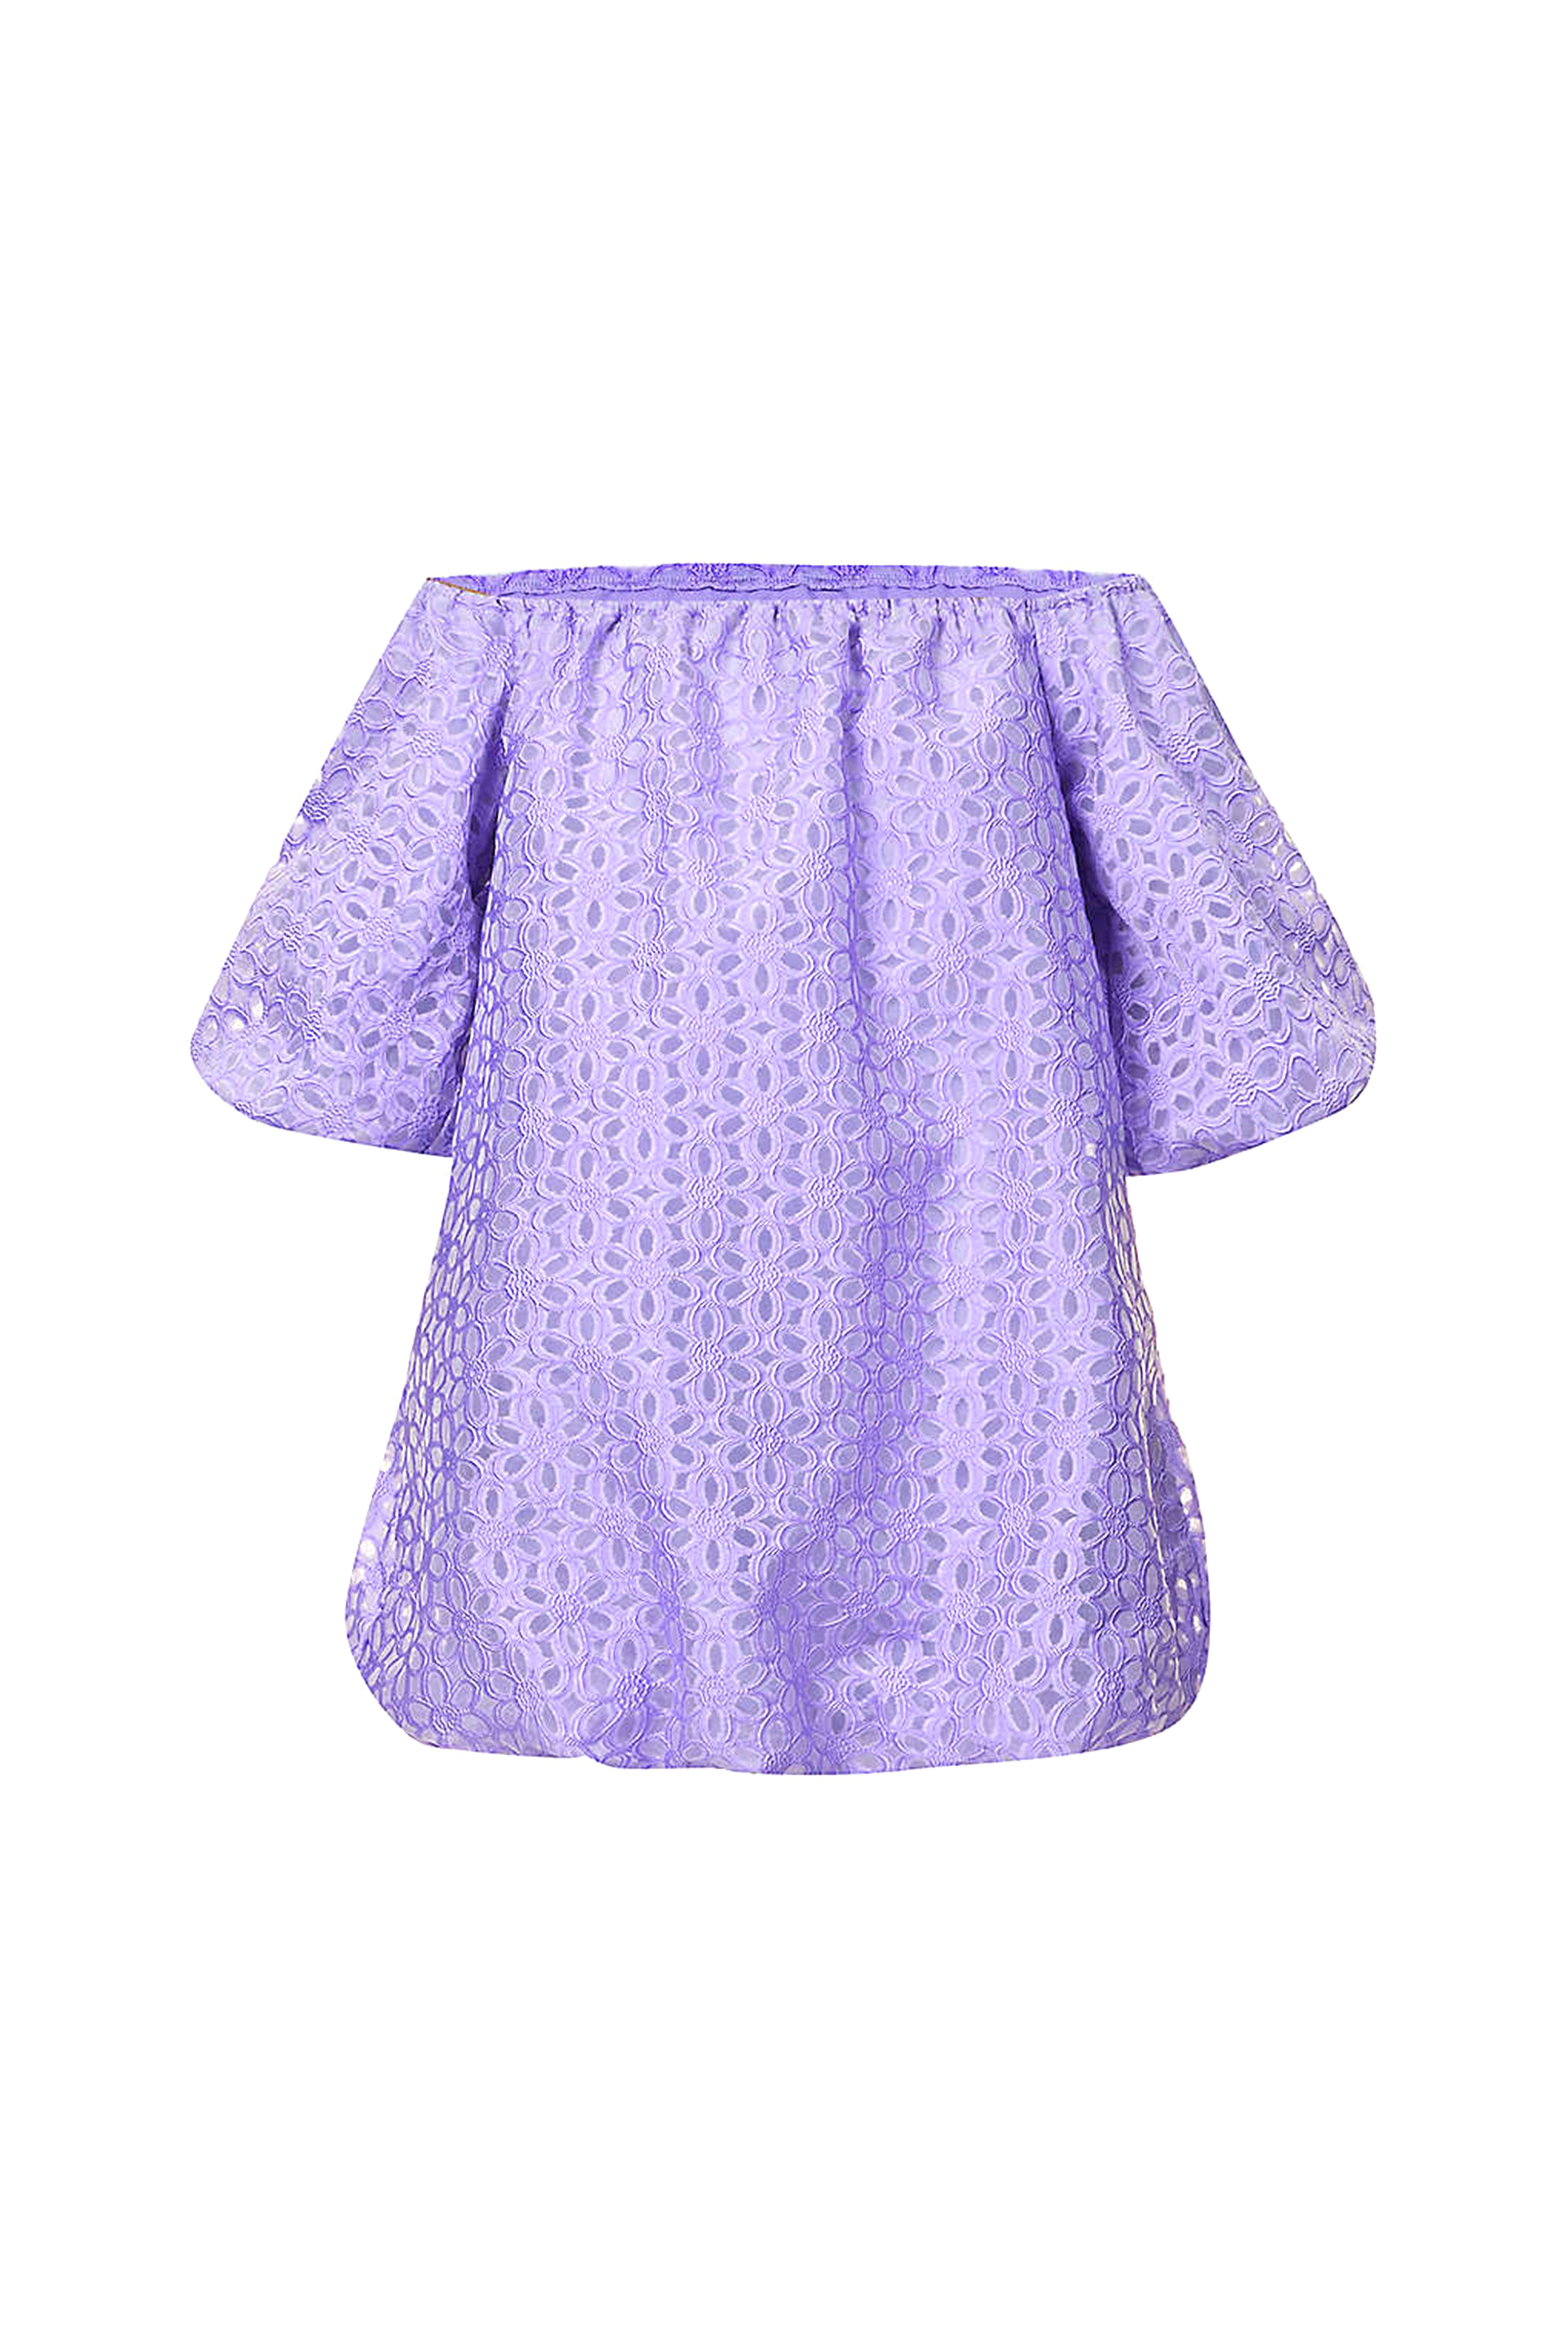 Lola Purple Puff Ball Dress